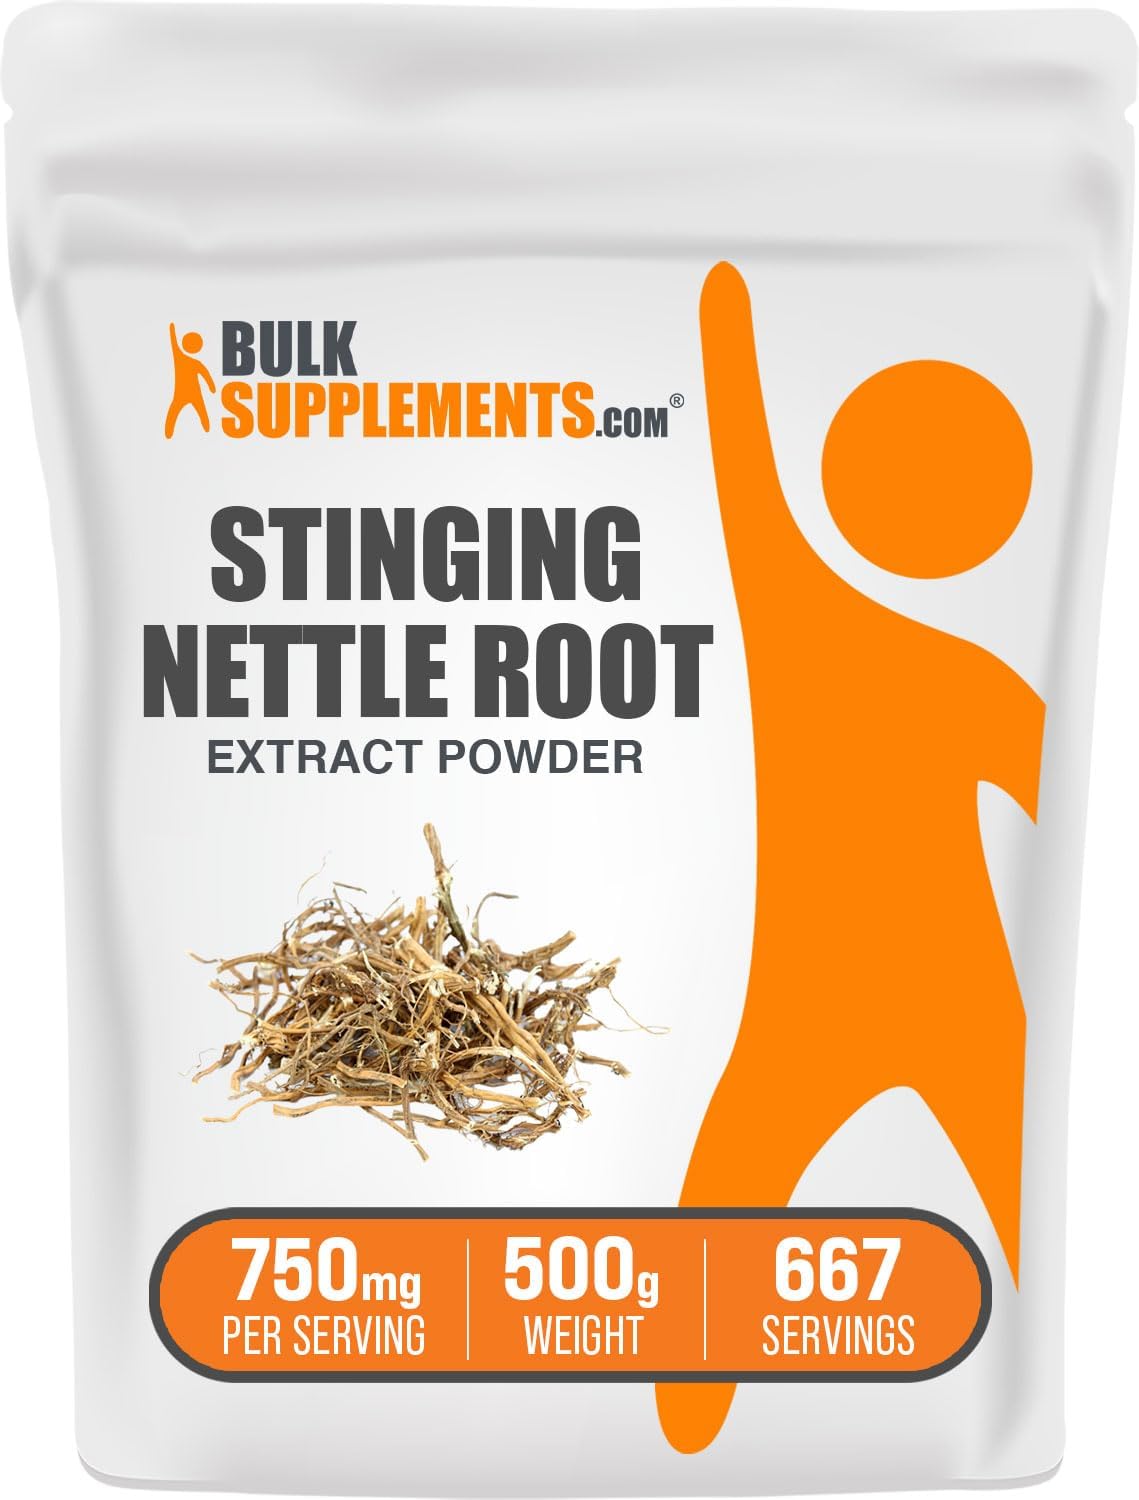 BULKSUPPLEMENTS.COM Stinging Nettle Root Extract - Nettle Root Supplem